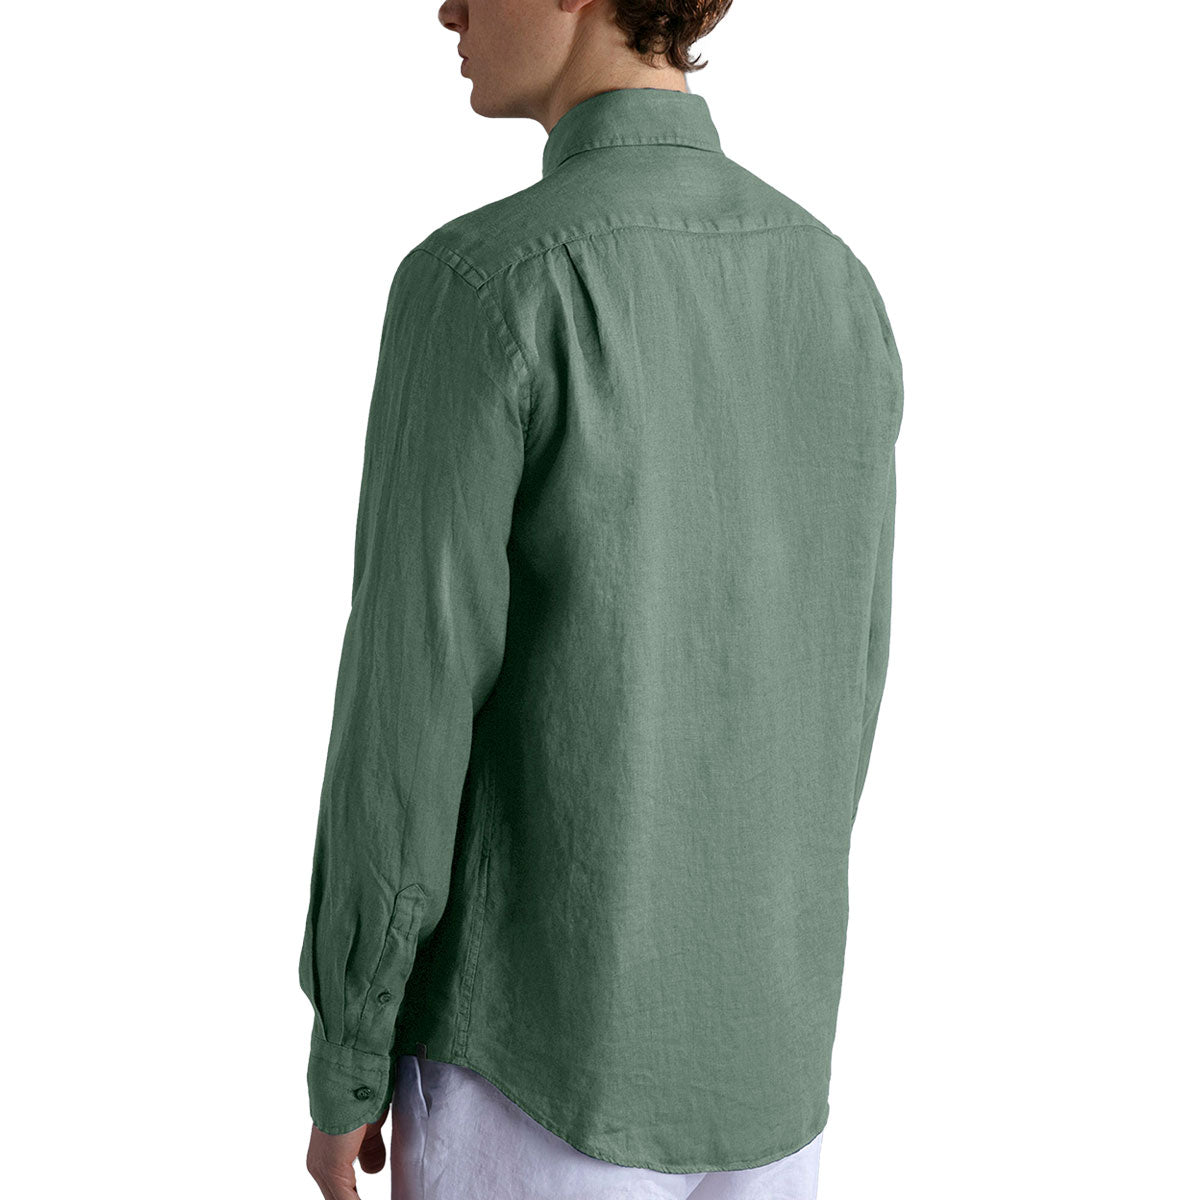 Olive Green Linen Long Sleeve Shirt L/S SHIRTS Paul & Shark   